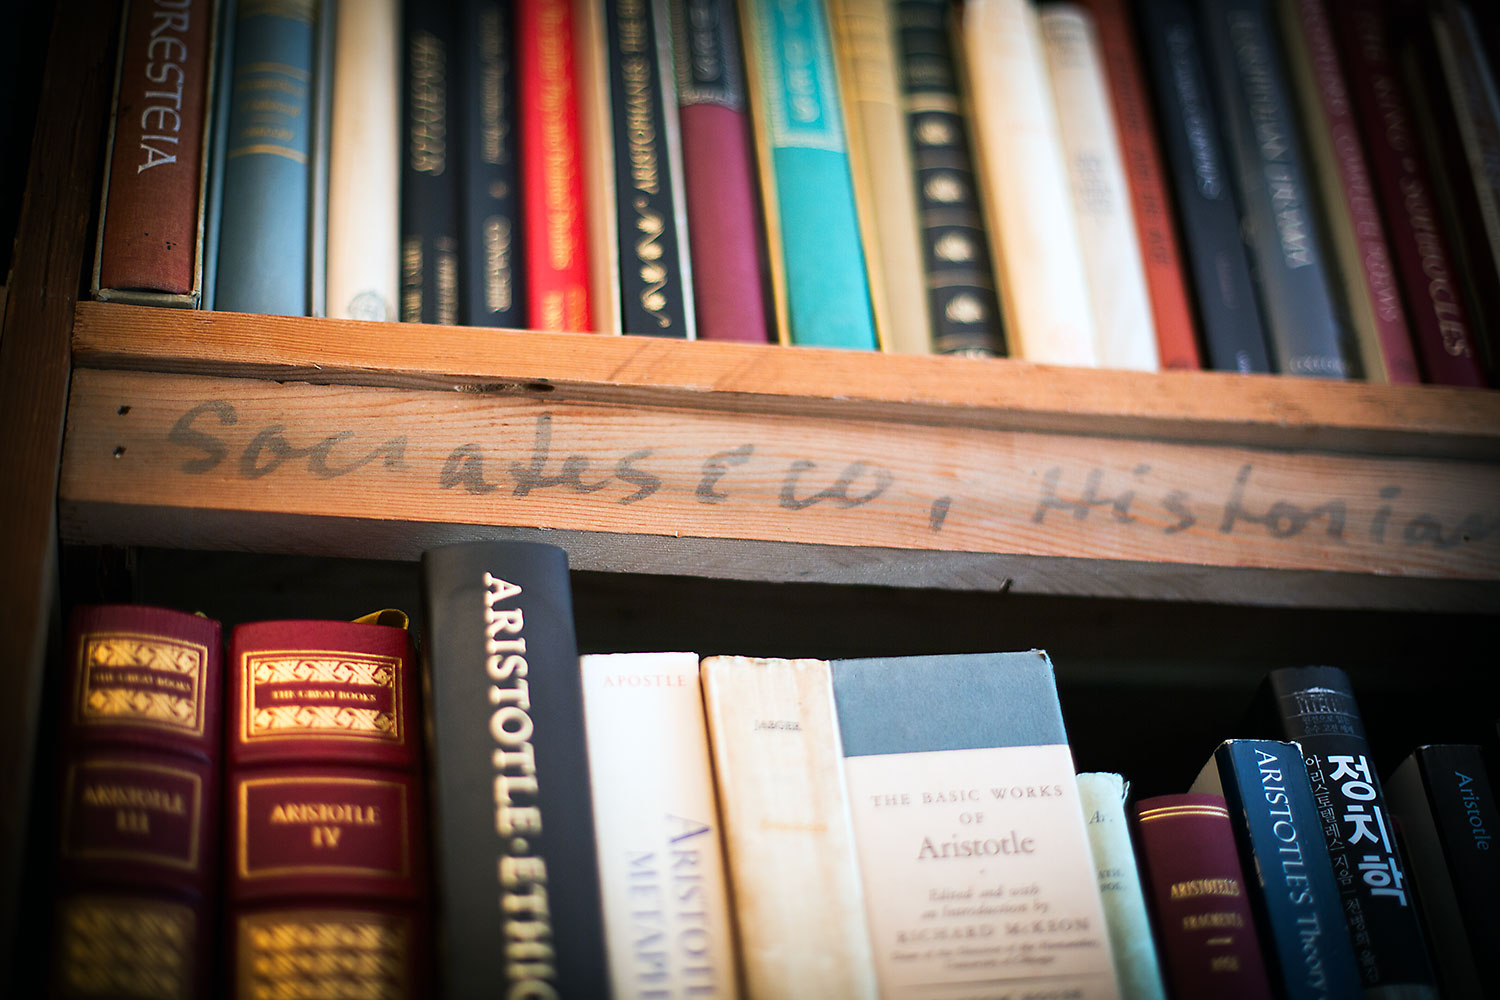 A bookshelf in a book store